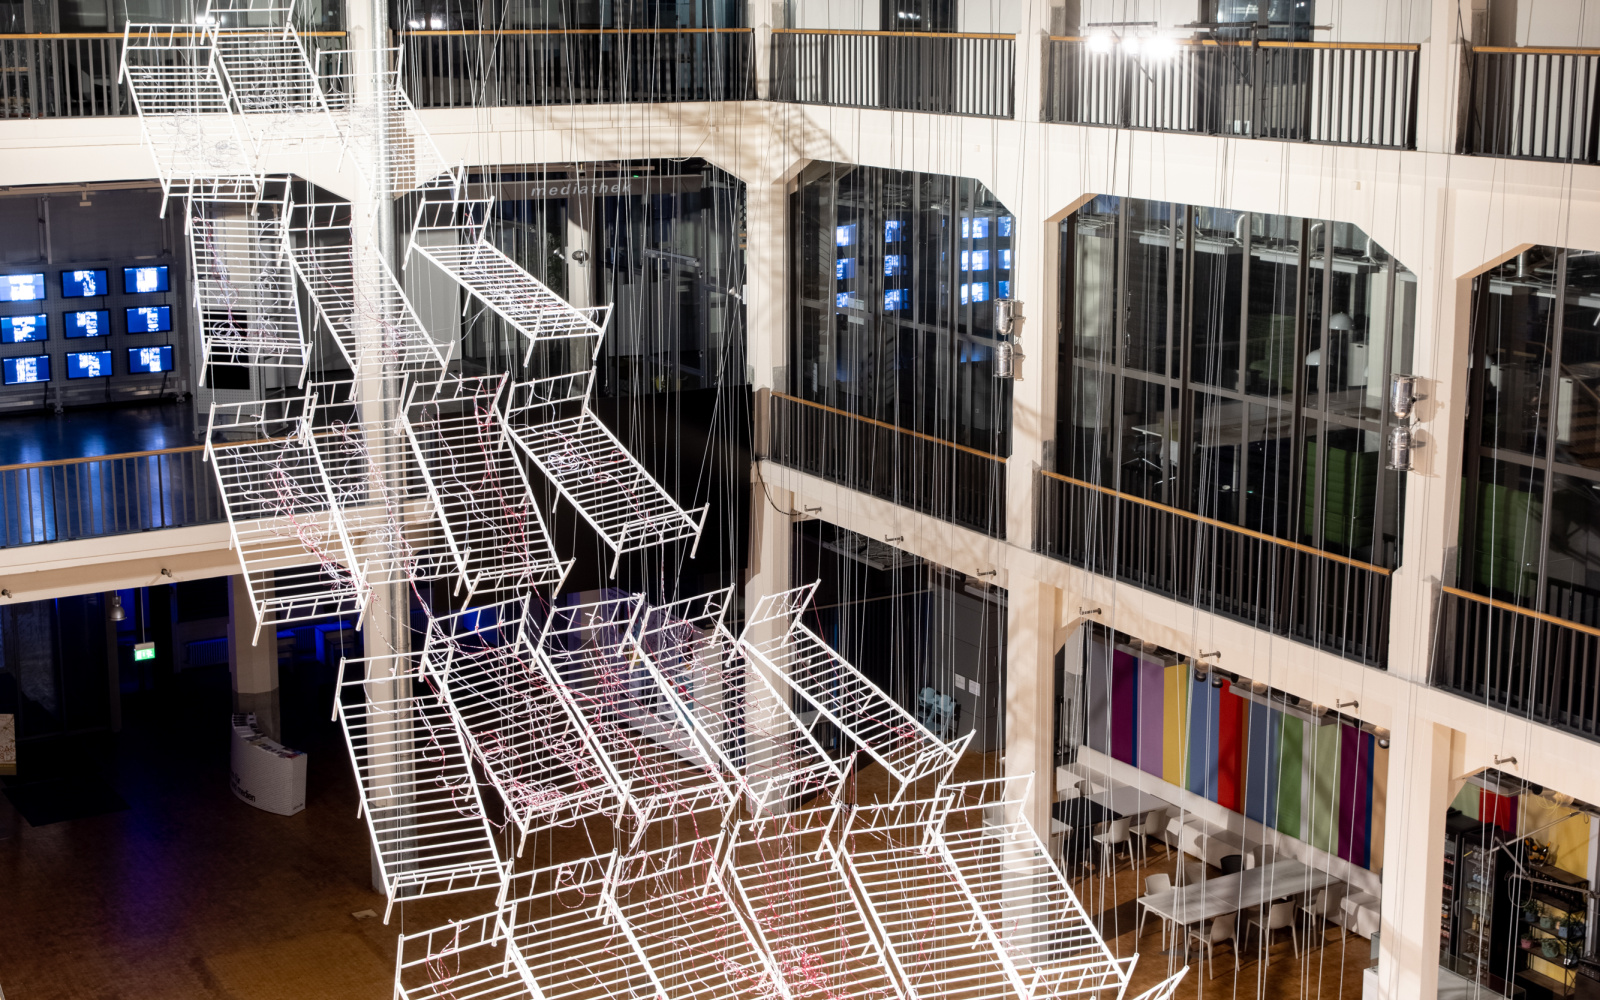 Installationsansicht von Chiharu Shiota`s Werk »Connected to Life«. Zu sehen sind aneinandergereihte, miteinander verbundene Bettgestelle, durchzogen von roten Schläuchen, die sich immer weiter vom Boden abheben und gemeinsam eine Art Weg aufwärts bilden.